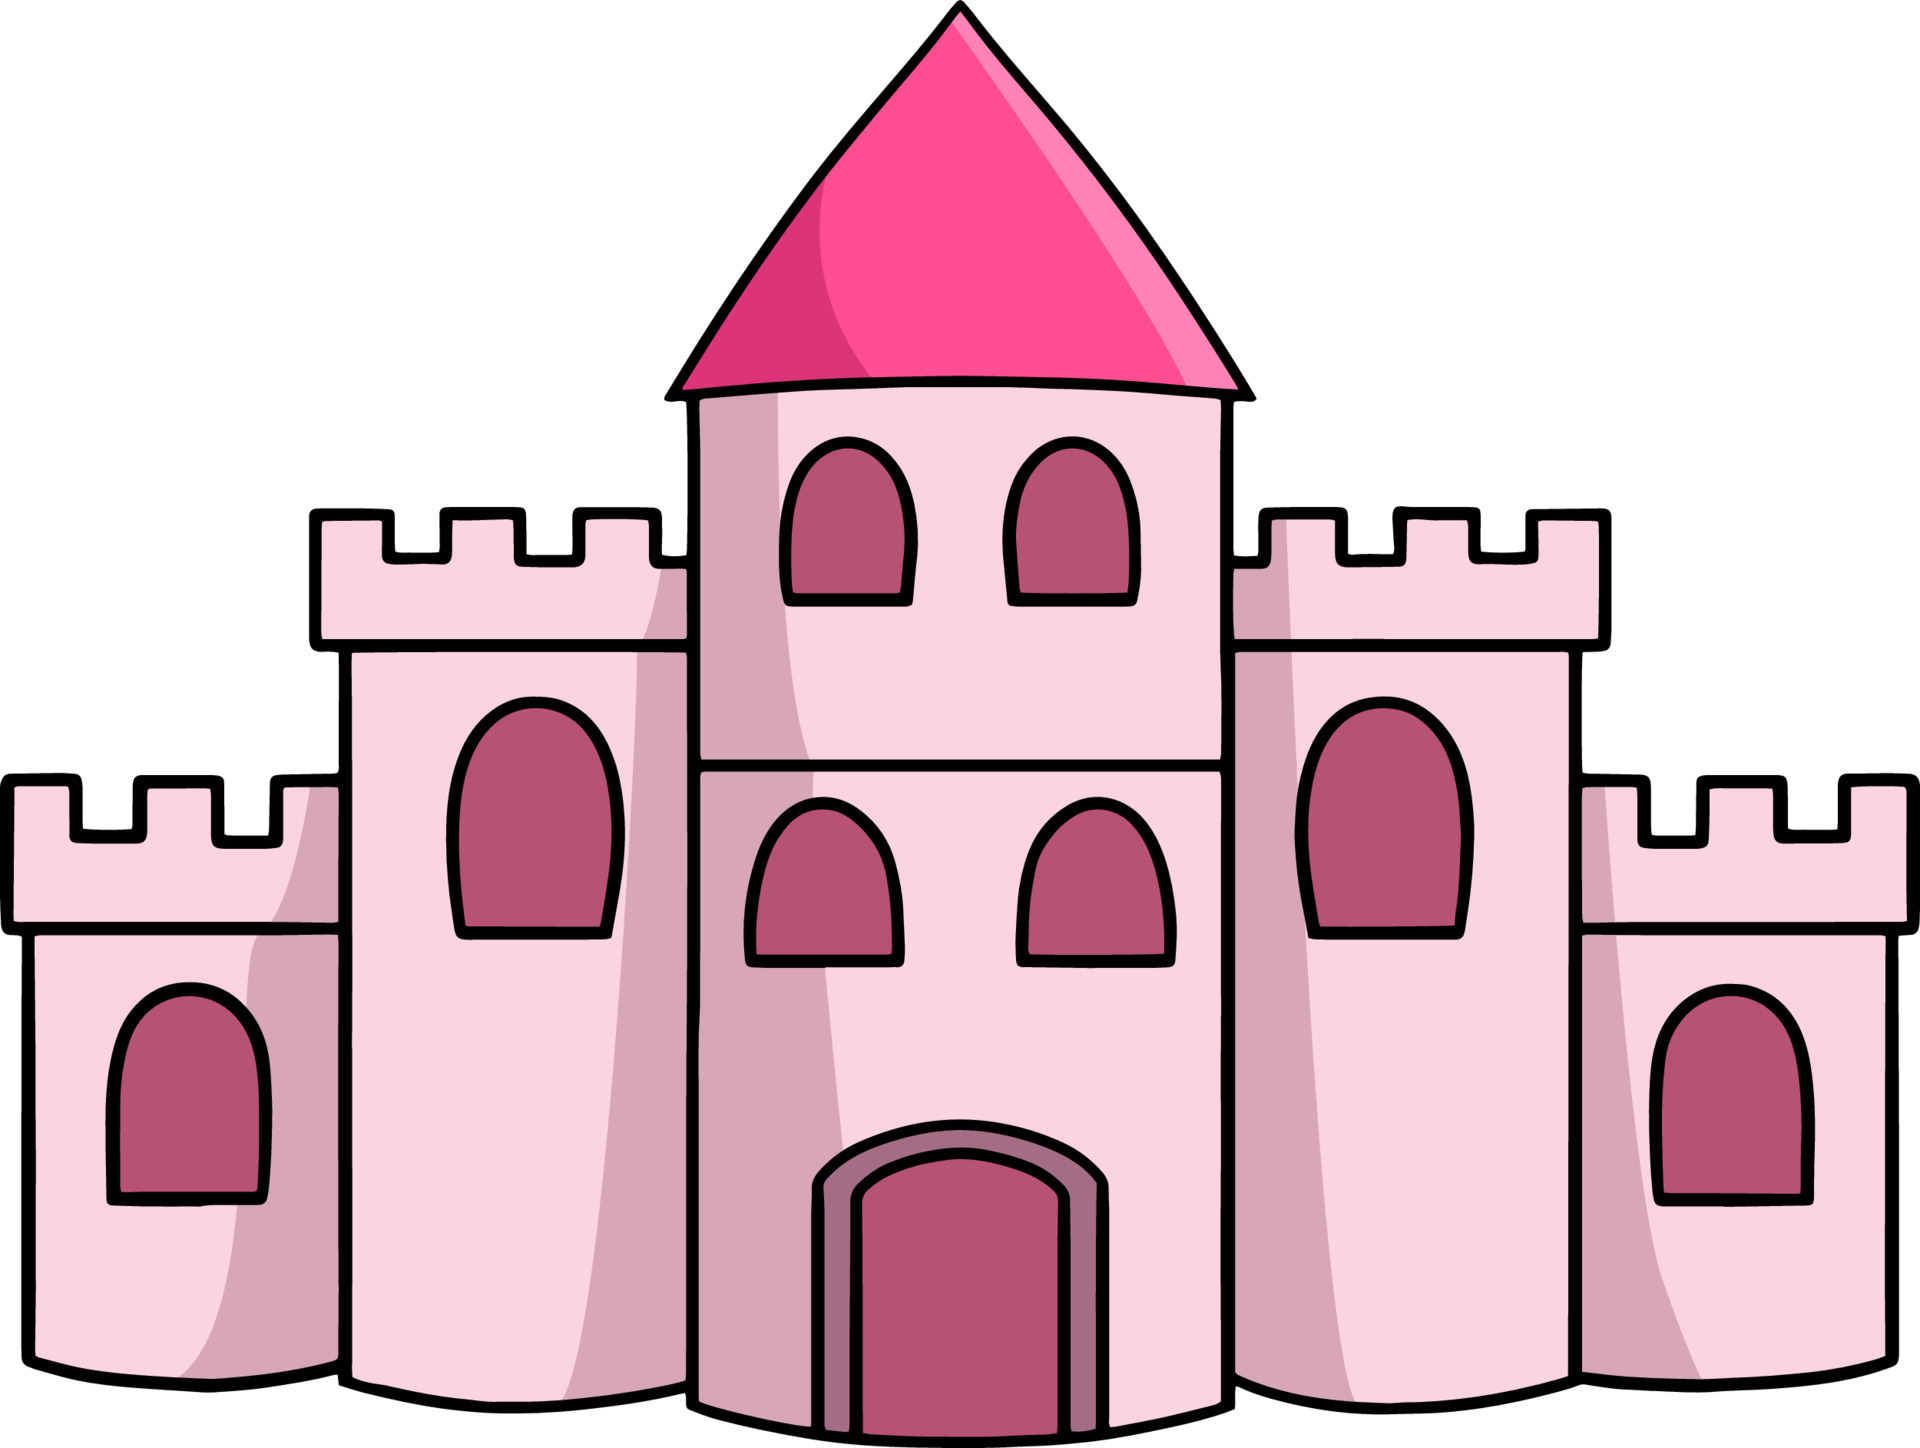 castle clipart